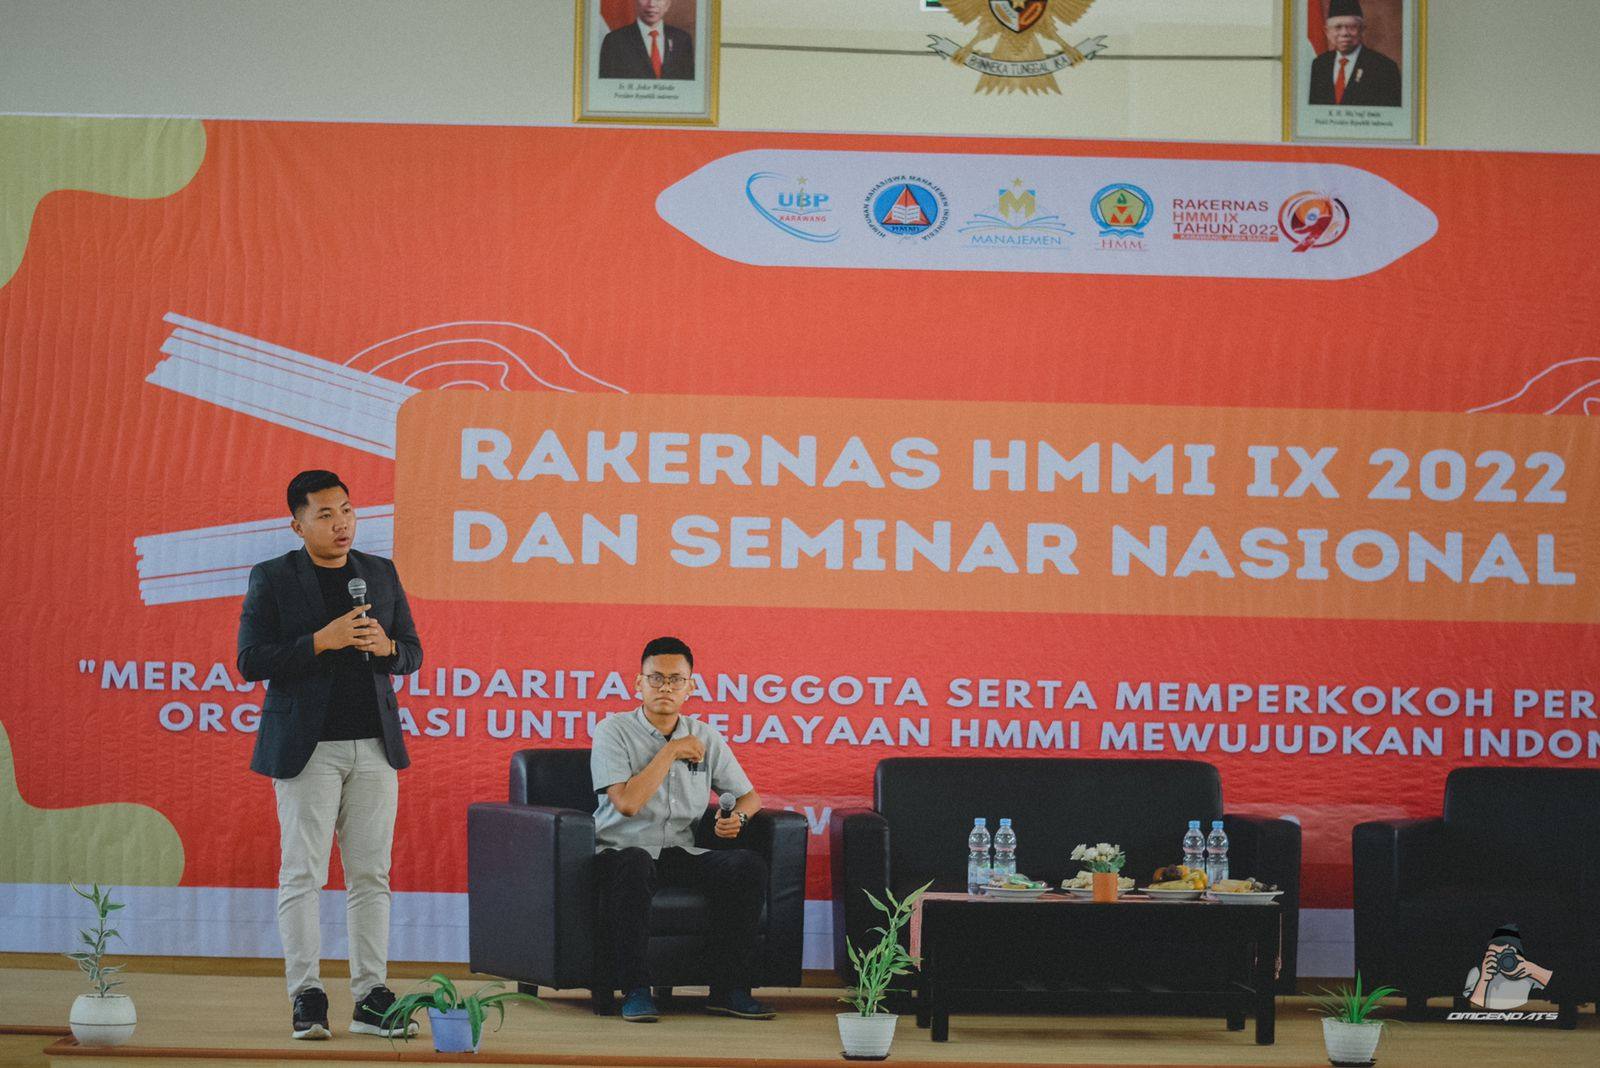 Pendiri Prima Medika Indonesia Berbagi Tips Berwirausaha di Masa Pandemi di Rakernas HMMI